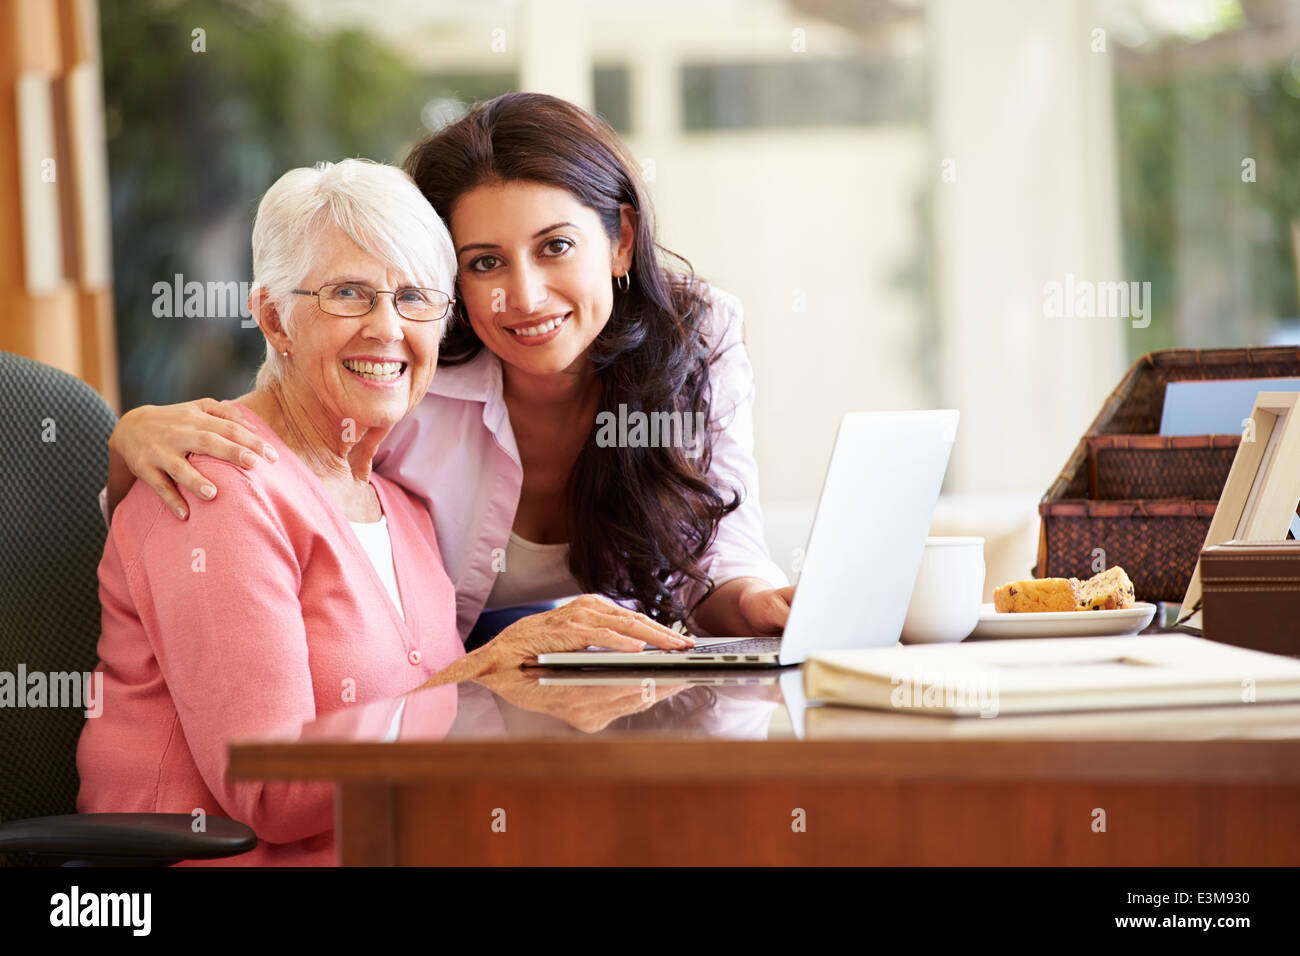 Figlia adulta aiutando la madre con il computer portatile Foto Stock